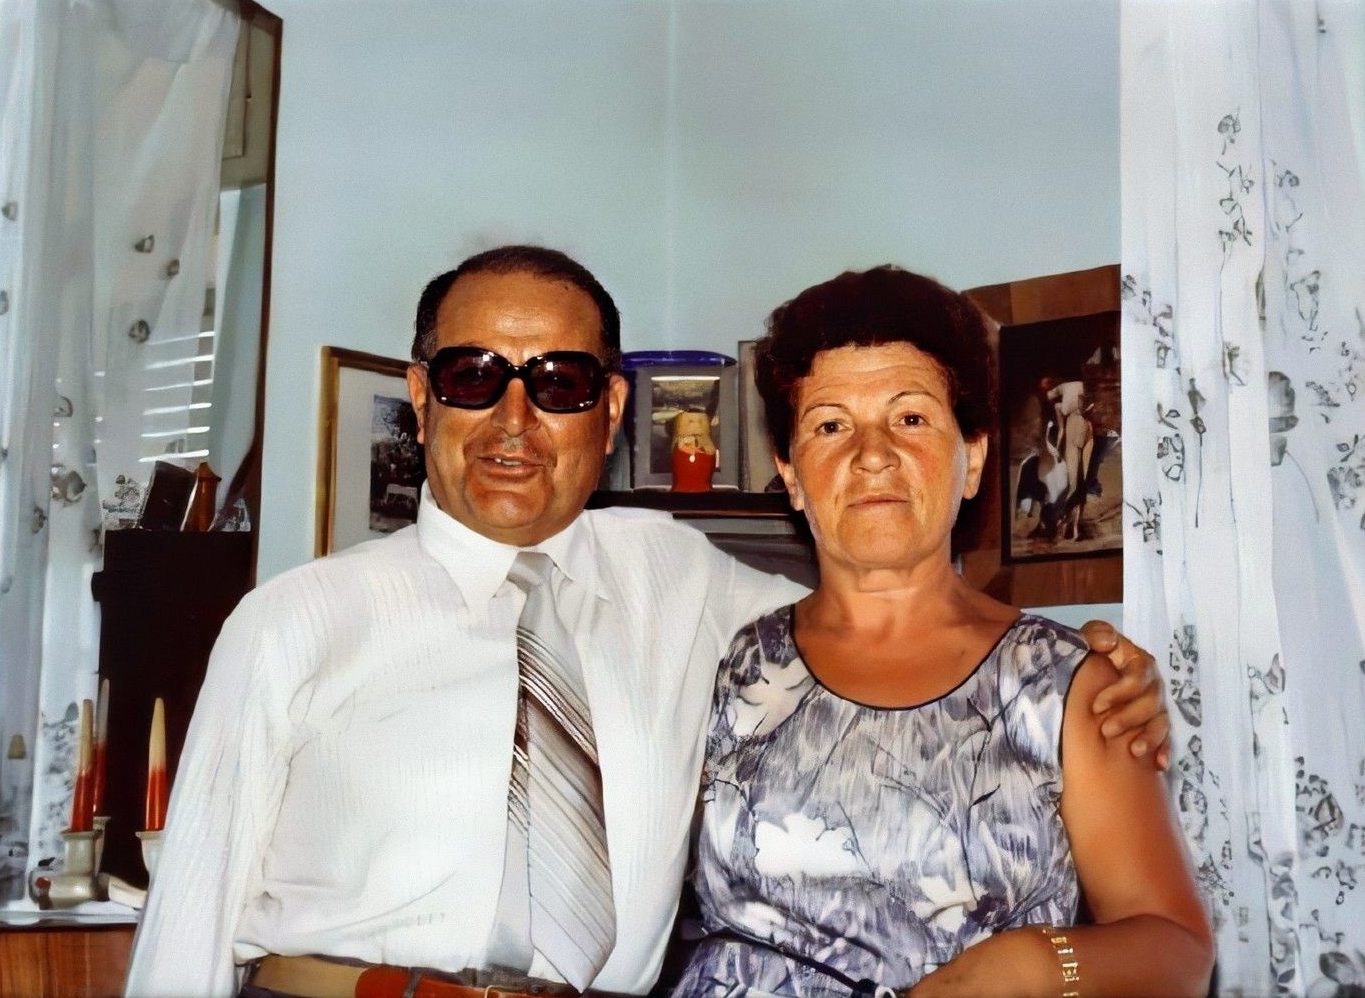  CATANIA 18 luglio 1981 - Schiavone Gaetano e Rizza Corradina